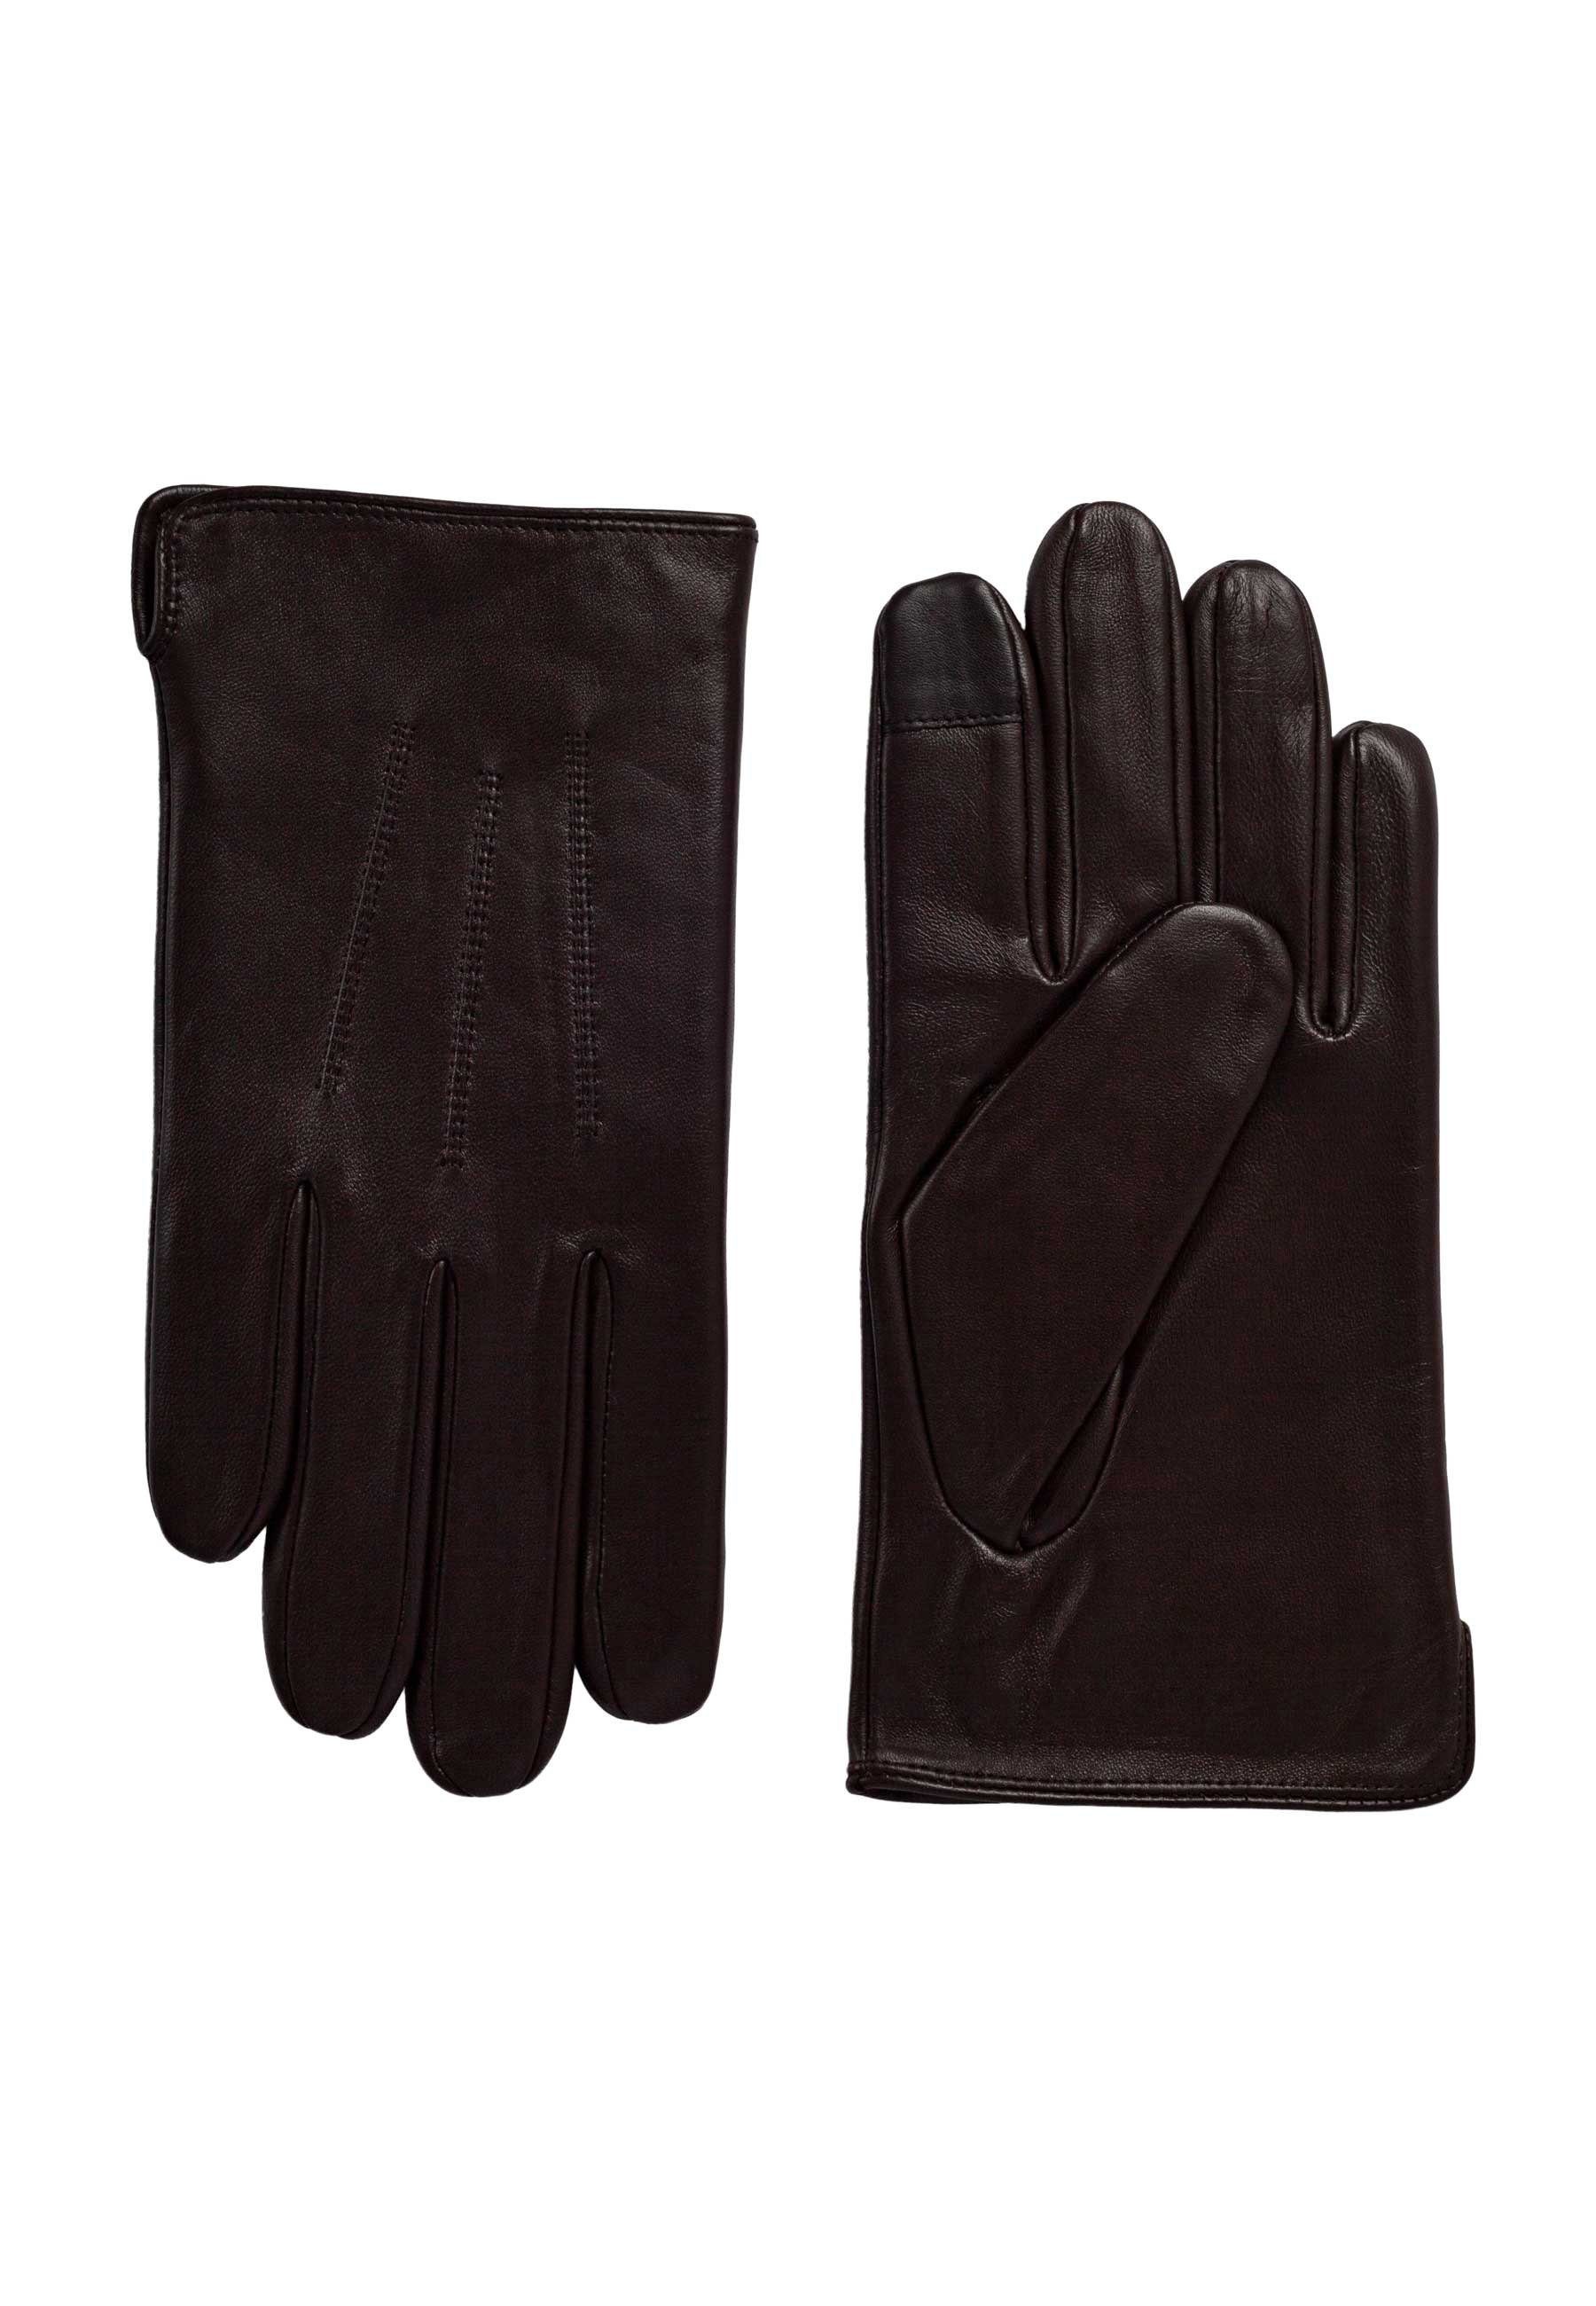 Lederhandschuhe Herrenhandschuh Gloves brown ok Matt 461